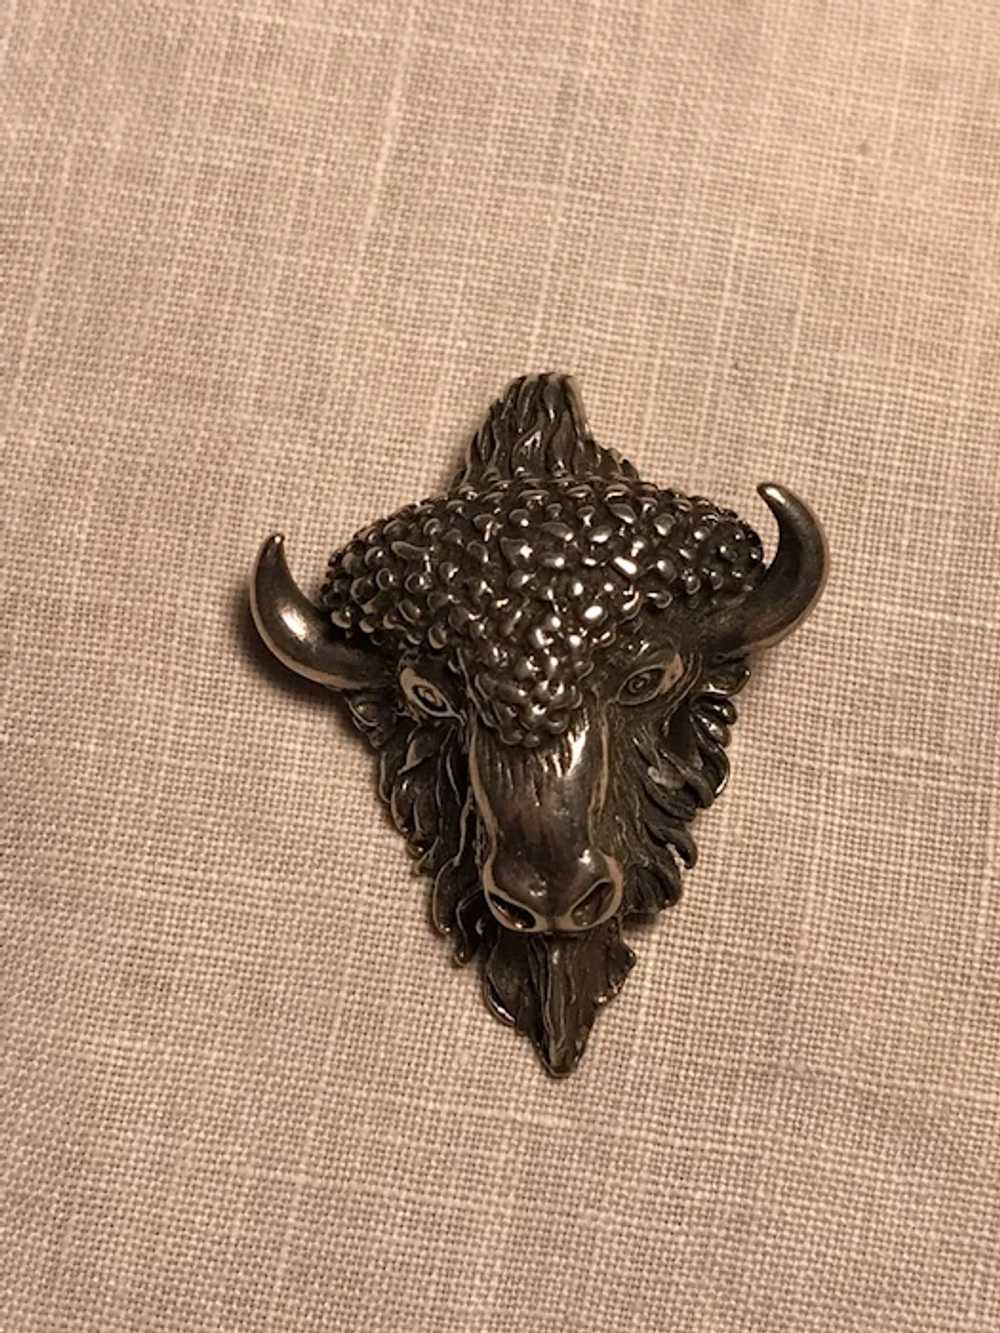 Vintage Sterling Buffalo/Bison Necklace - image 6